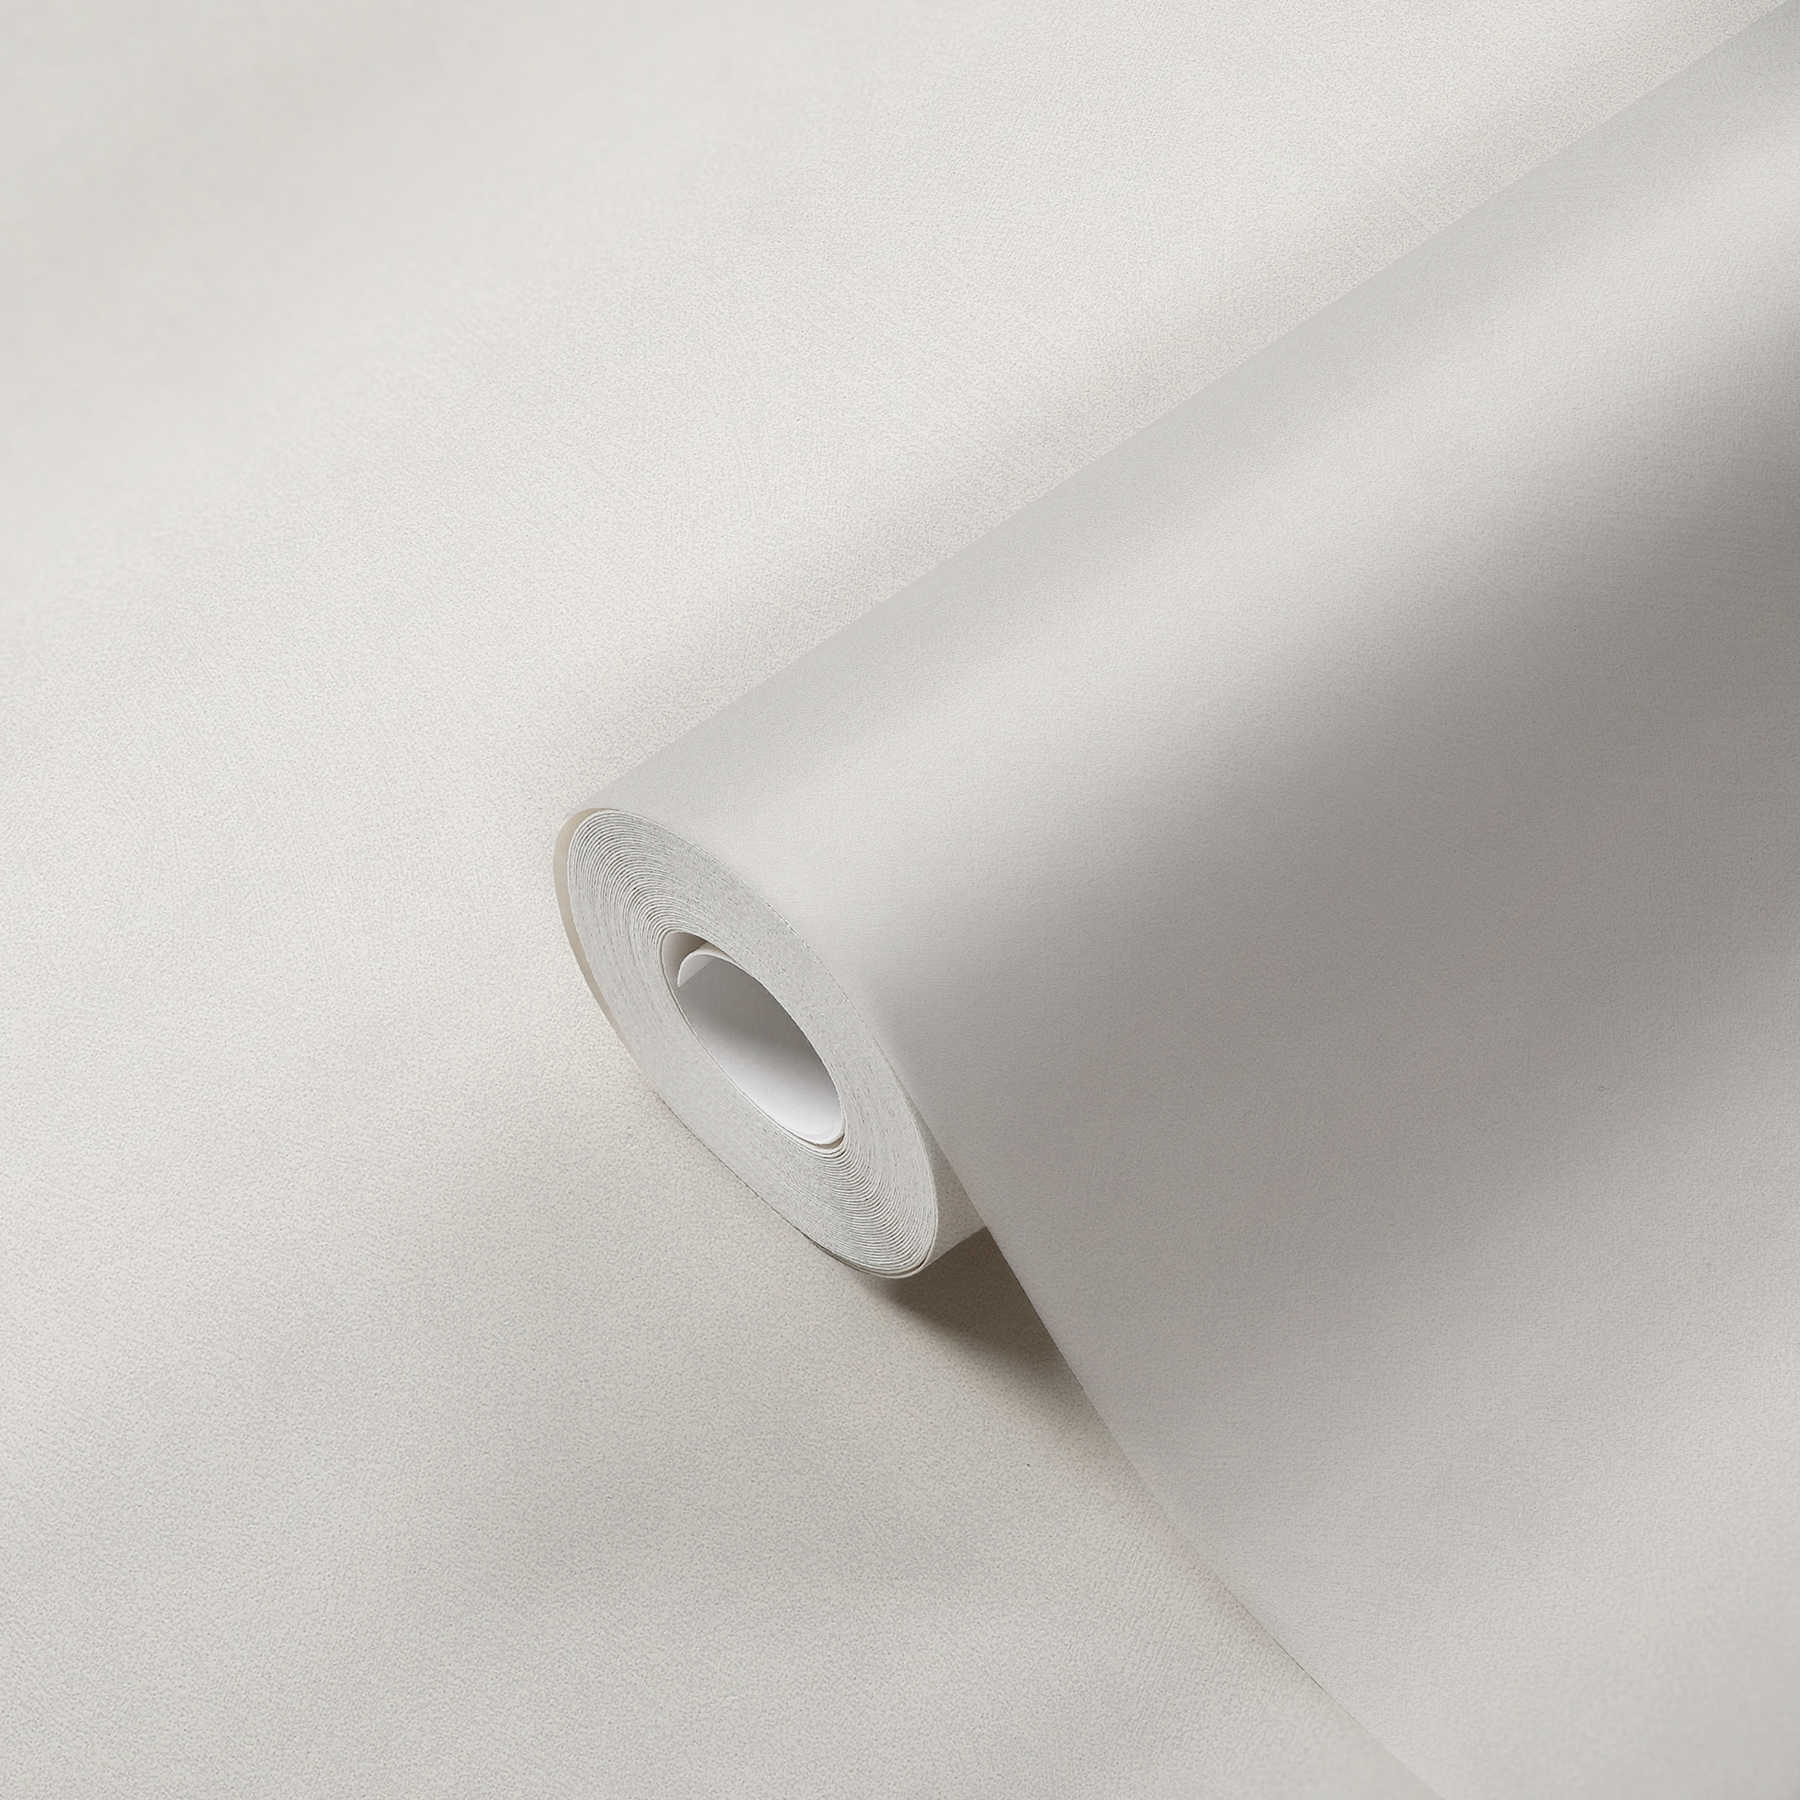             Carta da parati in tessuto non tessuto a tinta unita con effetto lino - grigio
        